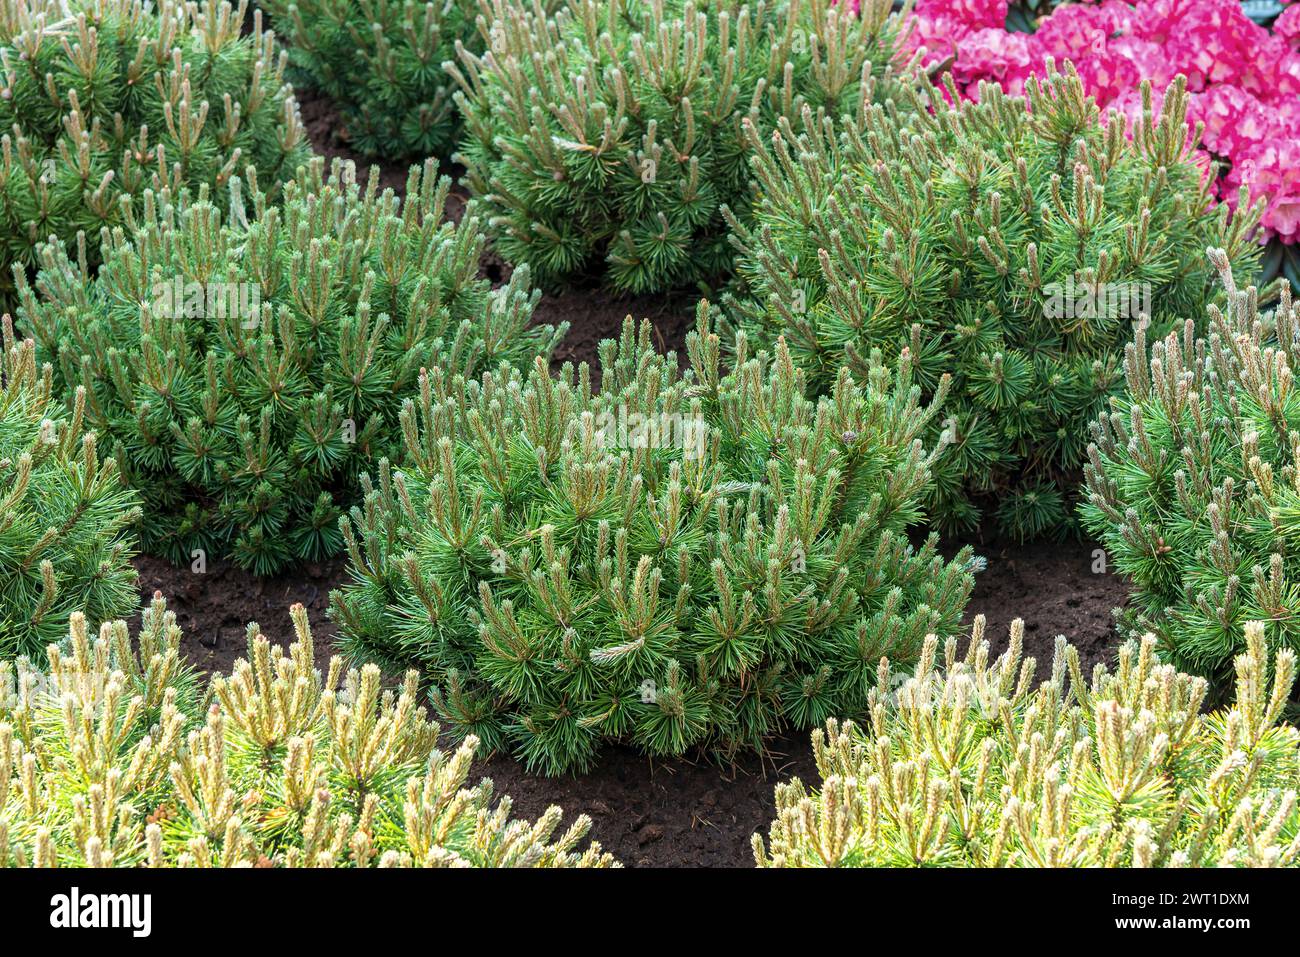 Mountain pine, Mugo pine (Pinus mugo 'Mops', Pinus mugo Mops), cultivar Mops, Europe, Bundesrepublik Deutschland Stock Photo